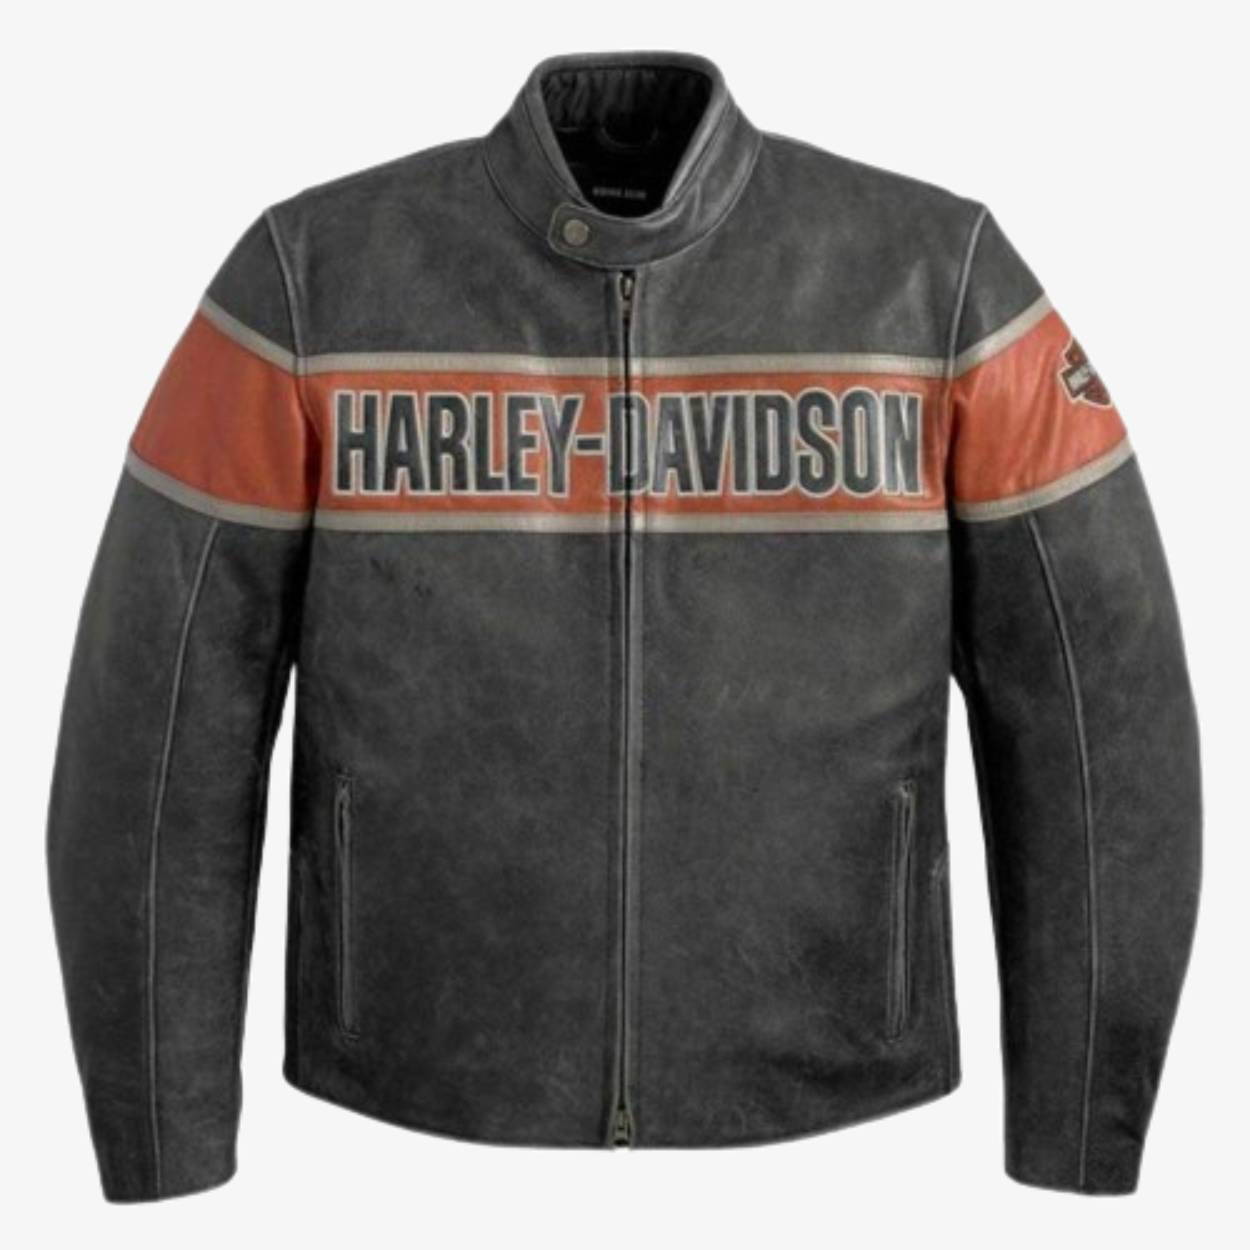 Men's Victory Lane Harley Davidson Biker Leather Jacket